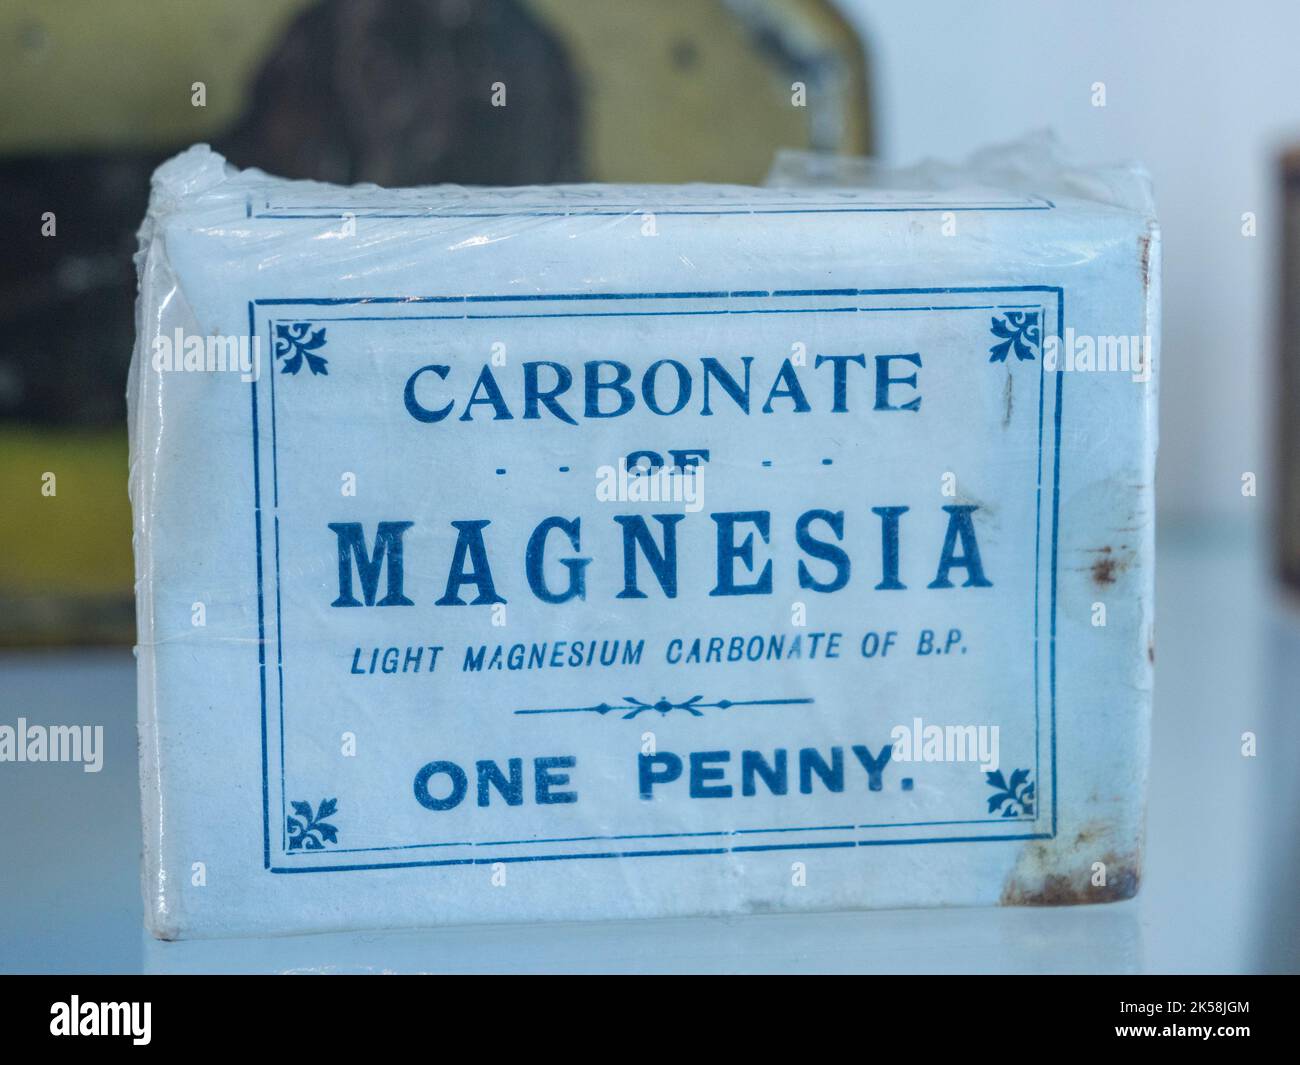 Carbonate de magnésie (carbonate de magnésium léger de BP) dans le Spitfire et le Hurricane Memorial Museum, Ramsgate, Kent, Royaume-Uni. Banque D'Images